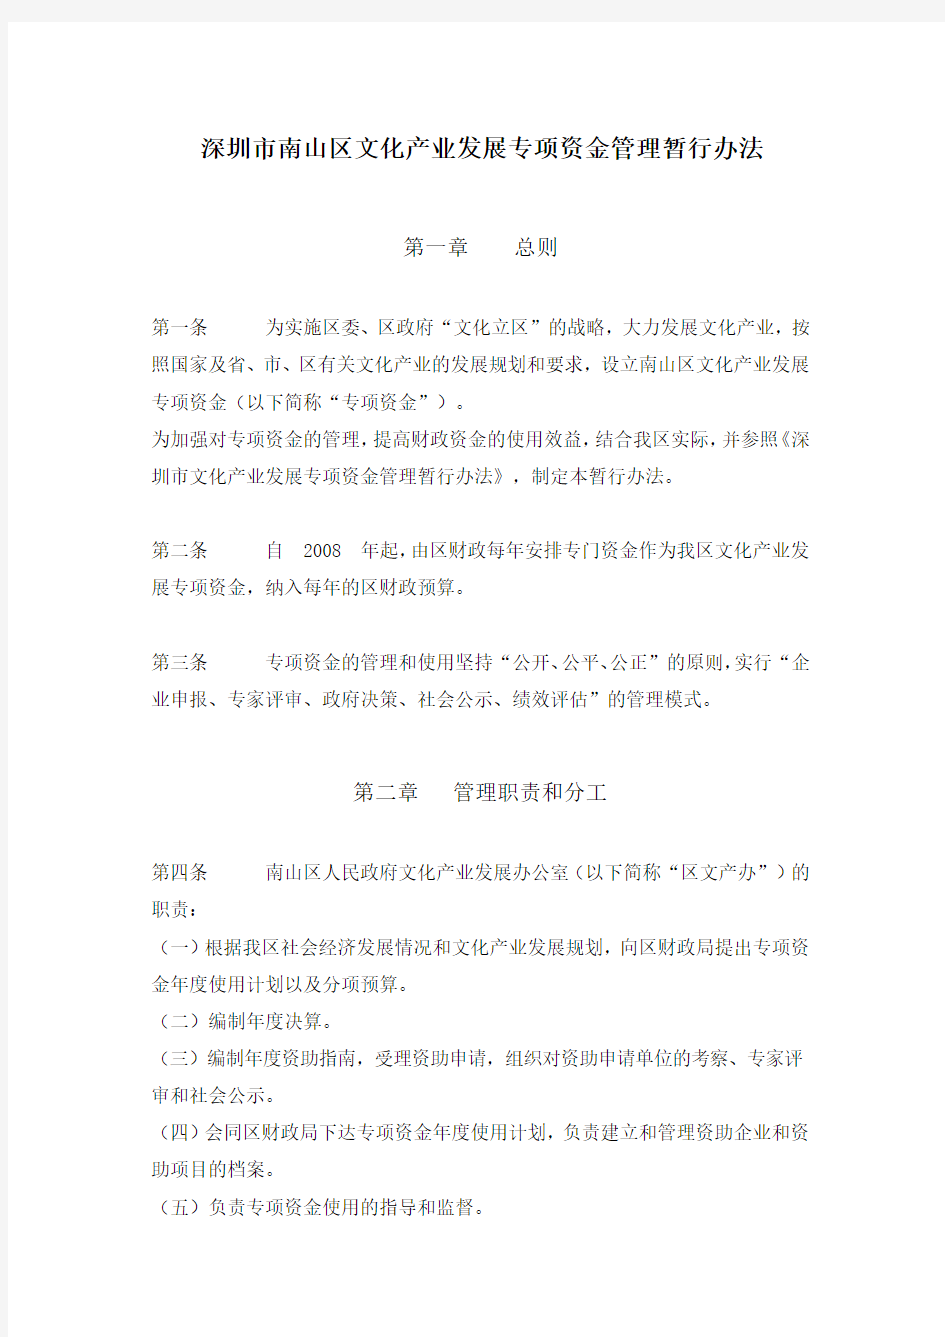 深圳市南山区文化产业发展专项资金管理暂行办法